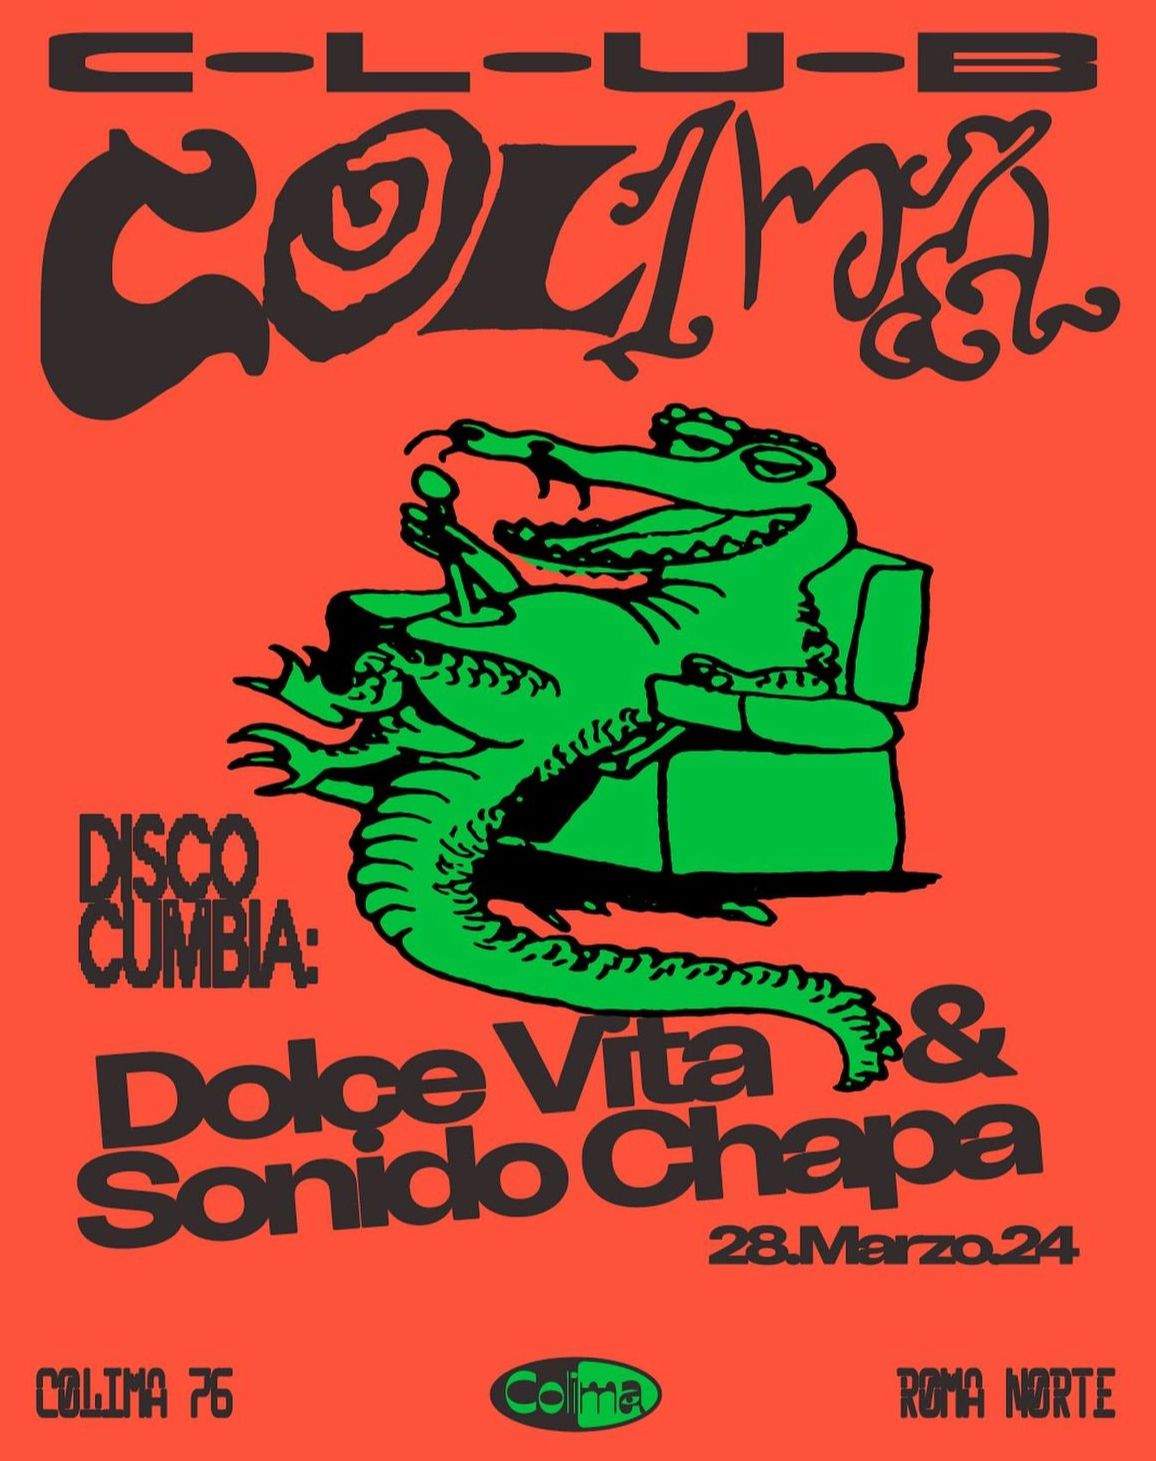 Disco Cumbia: Dolce Vita & Sonido Chapa - フライヤー表